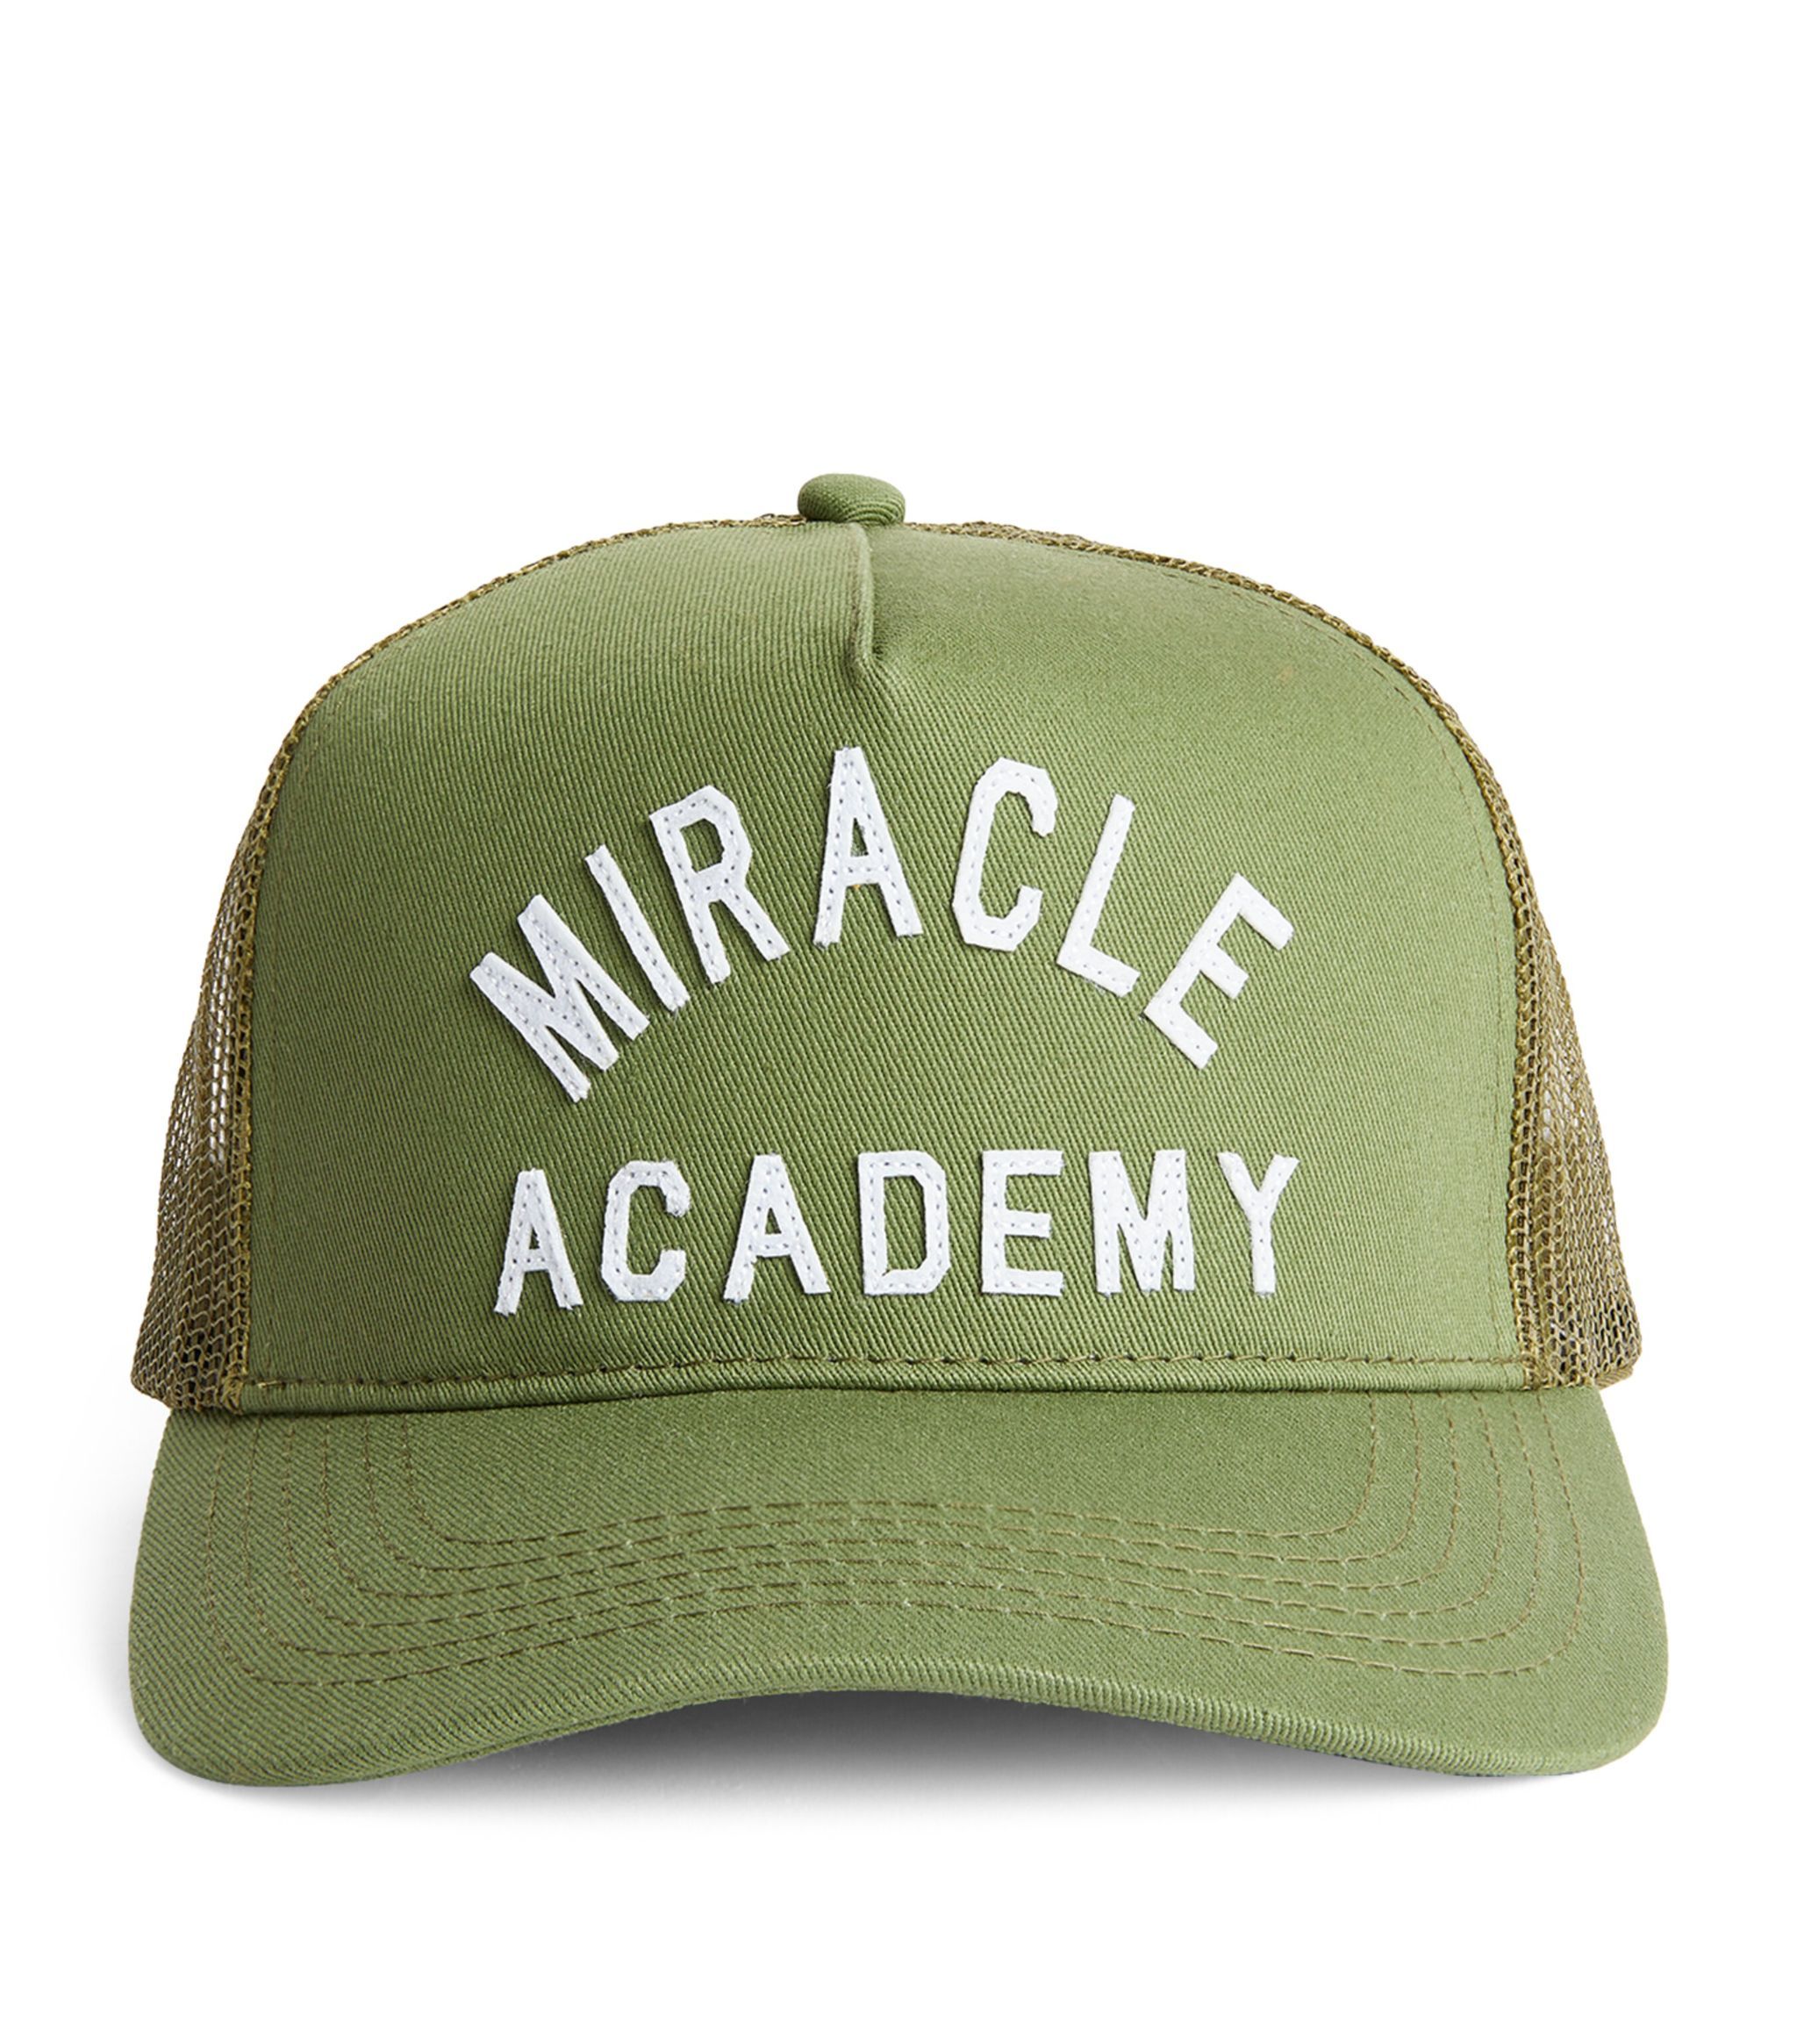 Miracle Academy Trucker Cap | Harrods